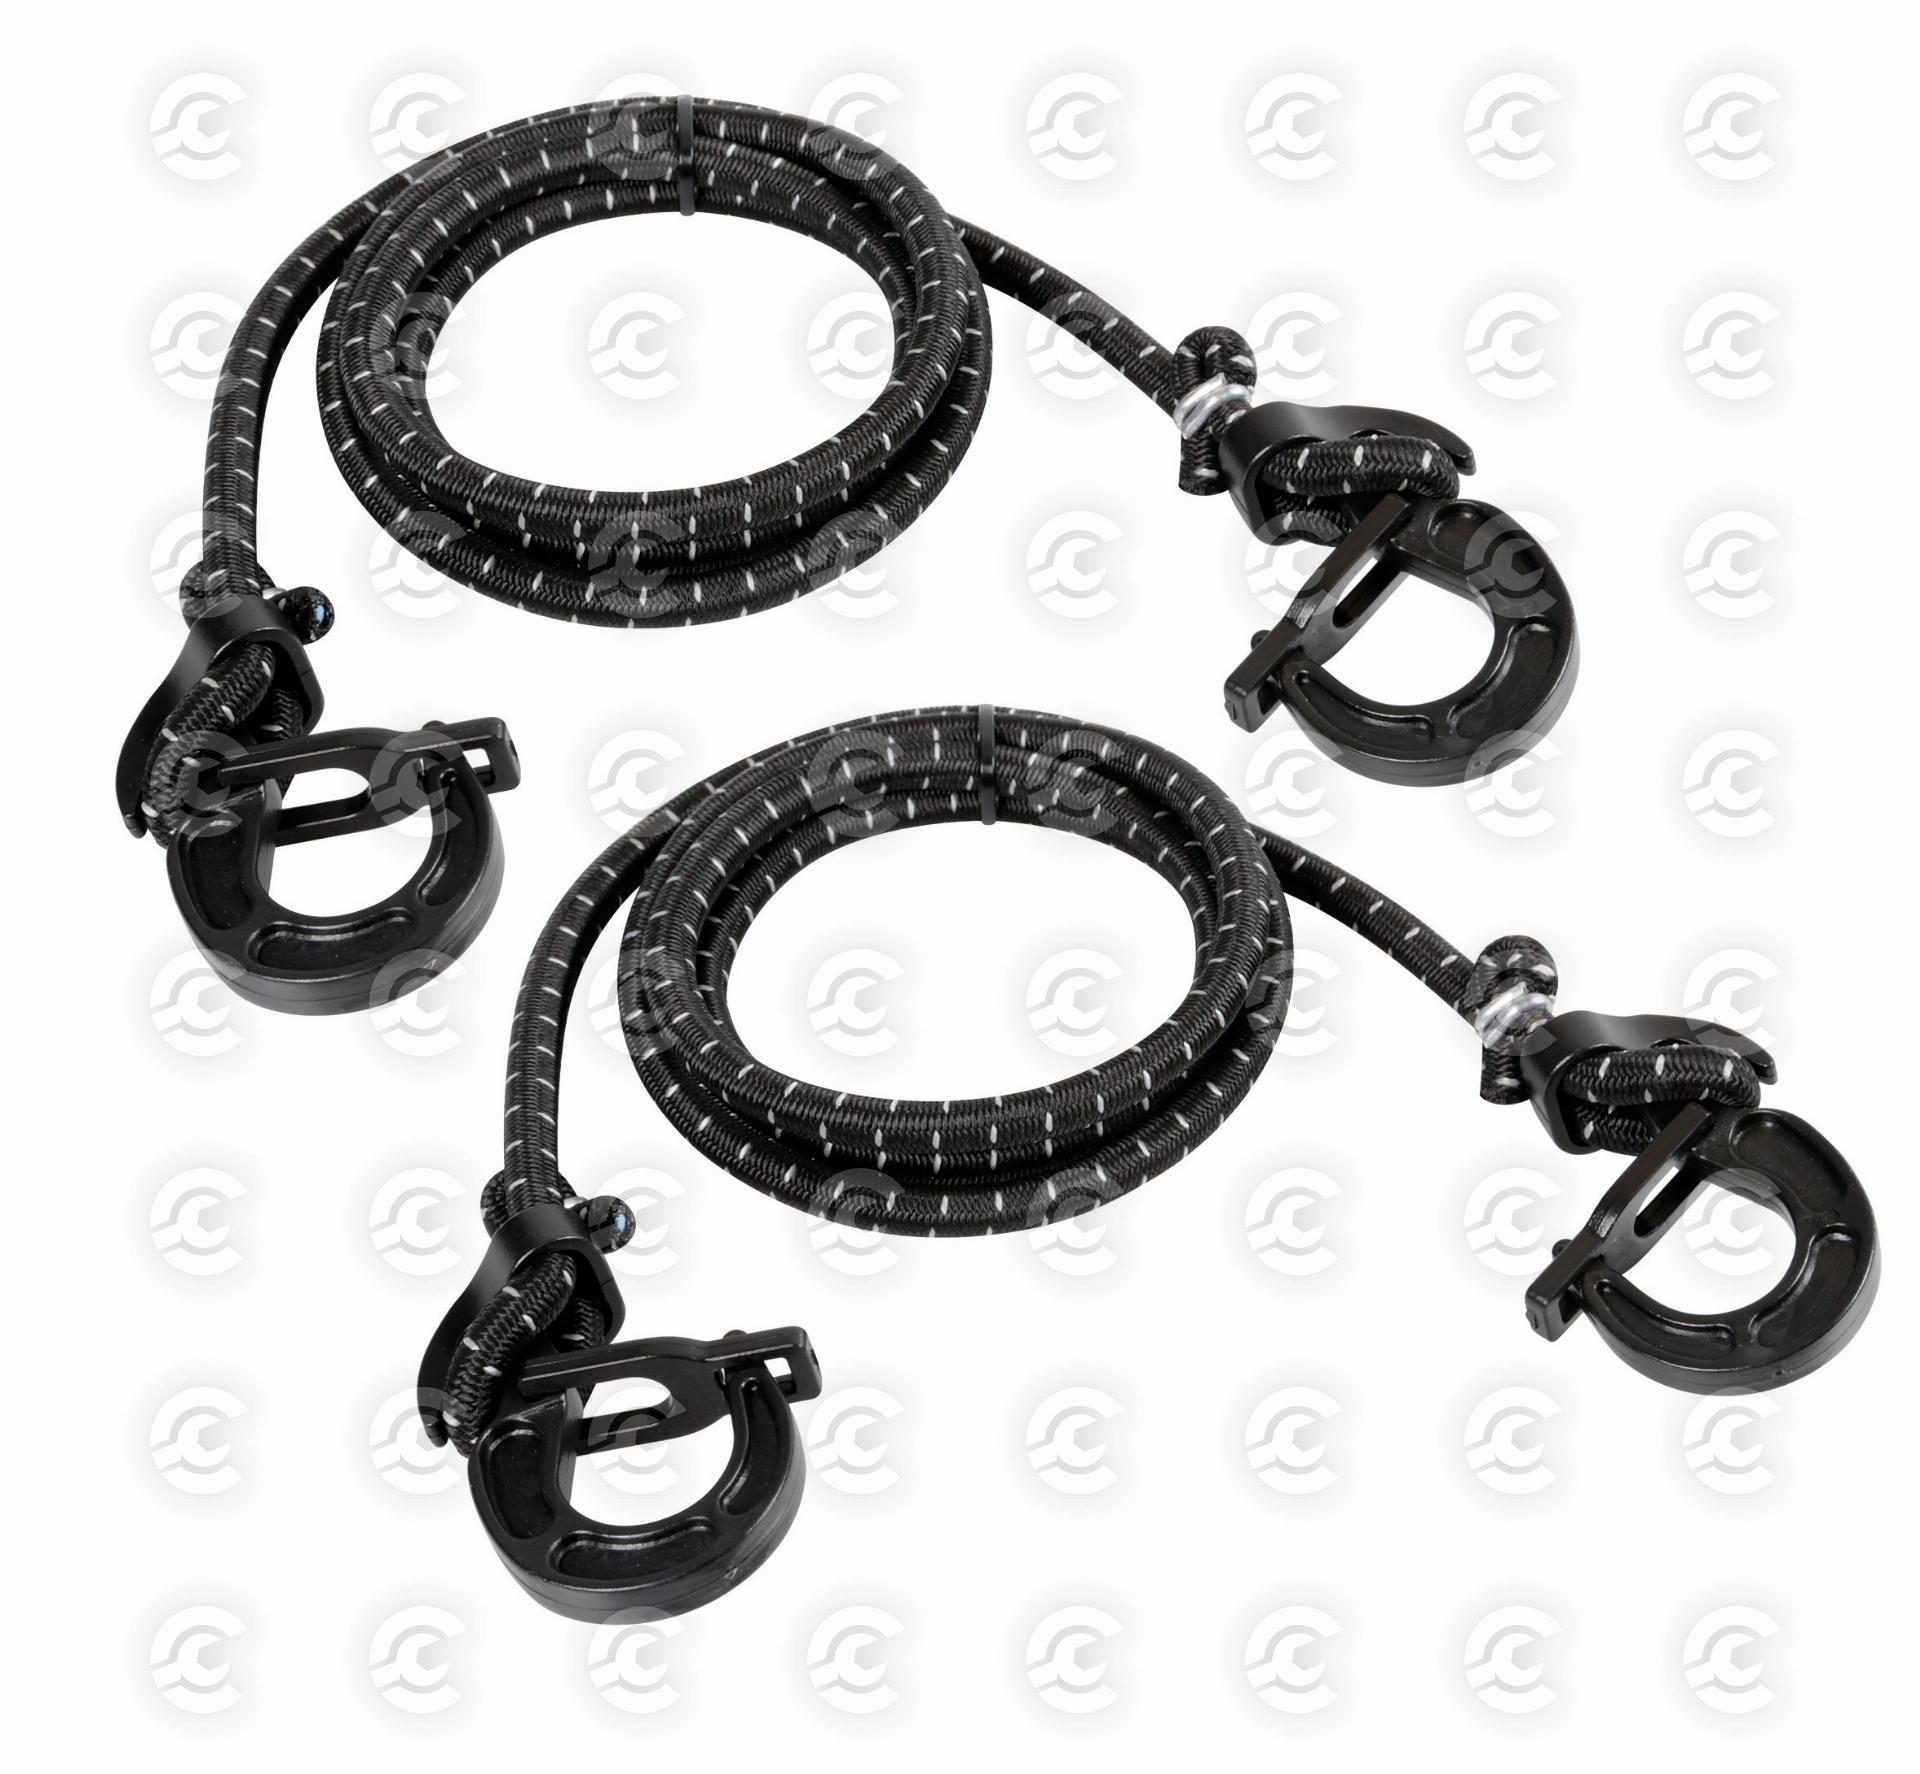 Uni-Flex, coppia corde elastiche regolabili con ganci di sicurezza